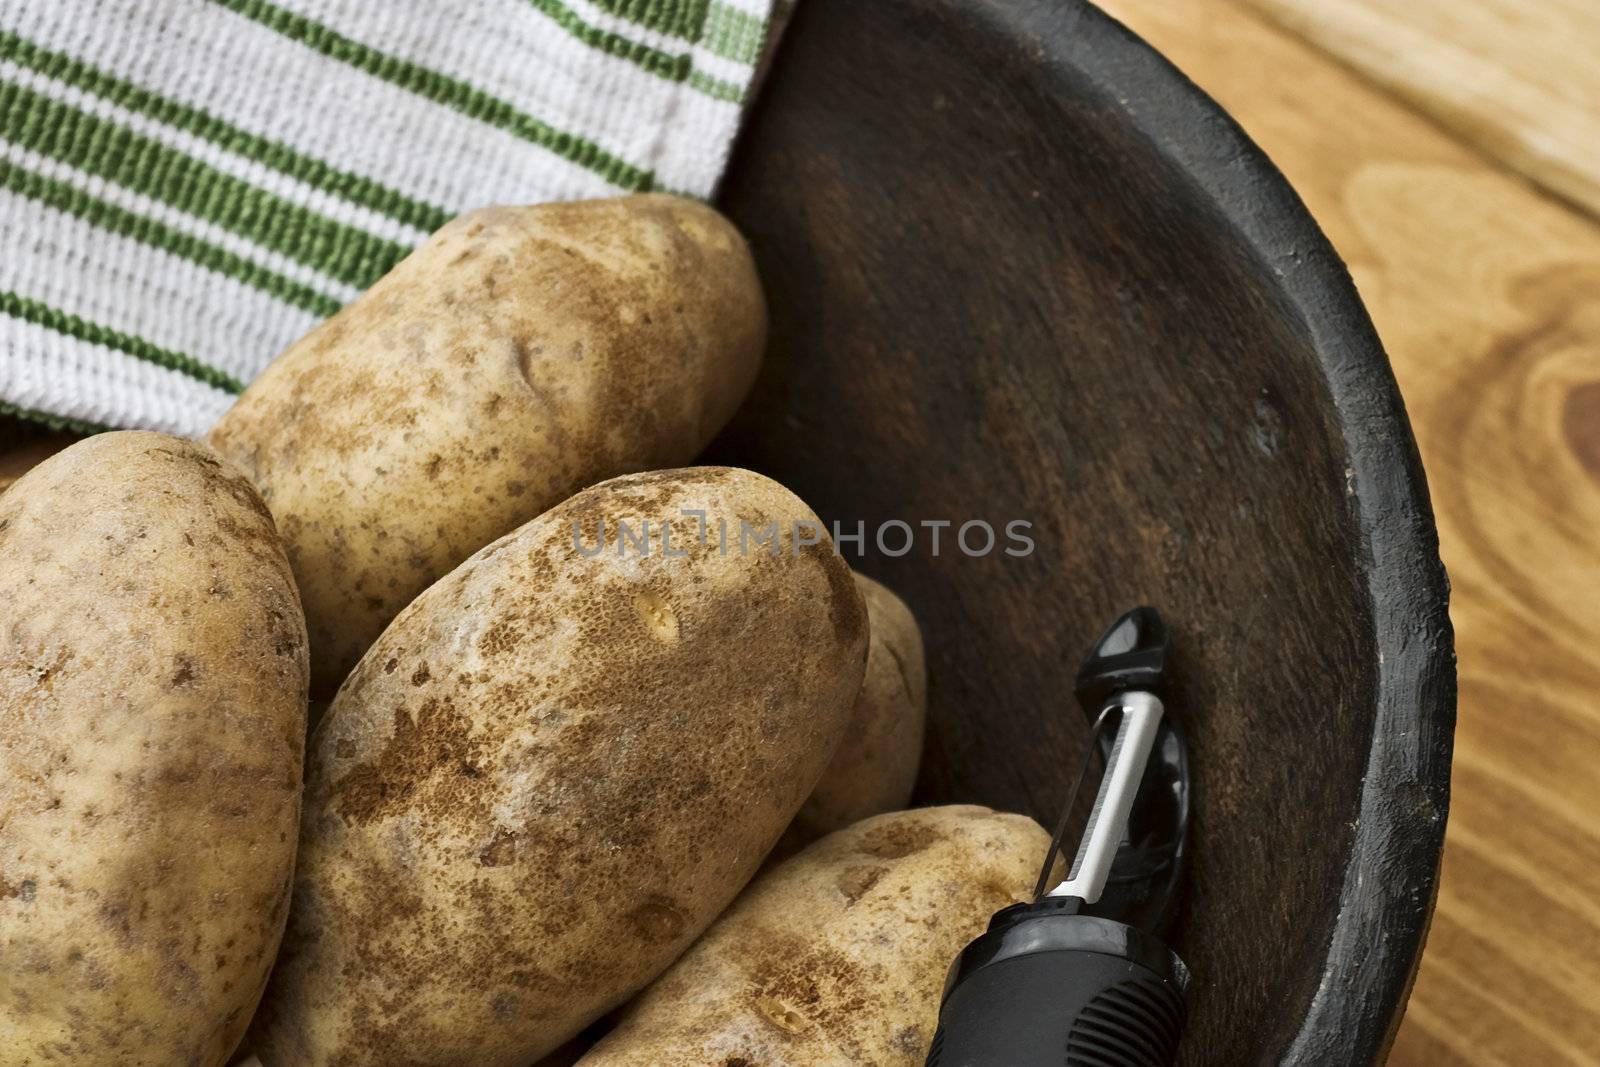 Raw Potatoes by StephanieFrey